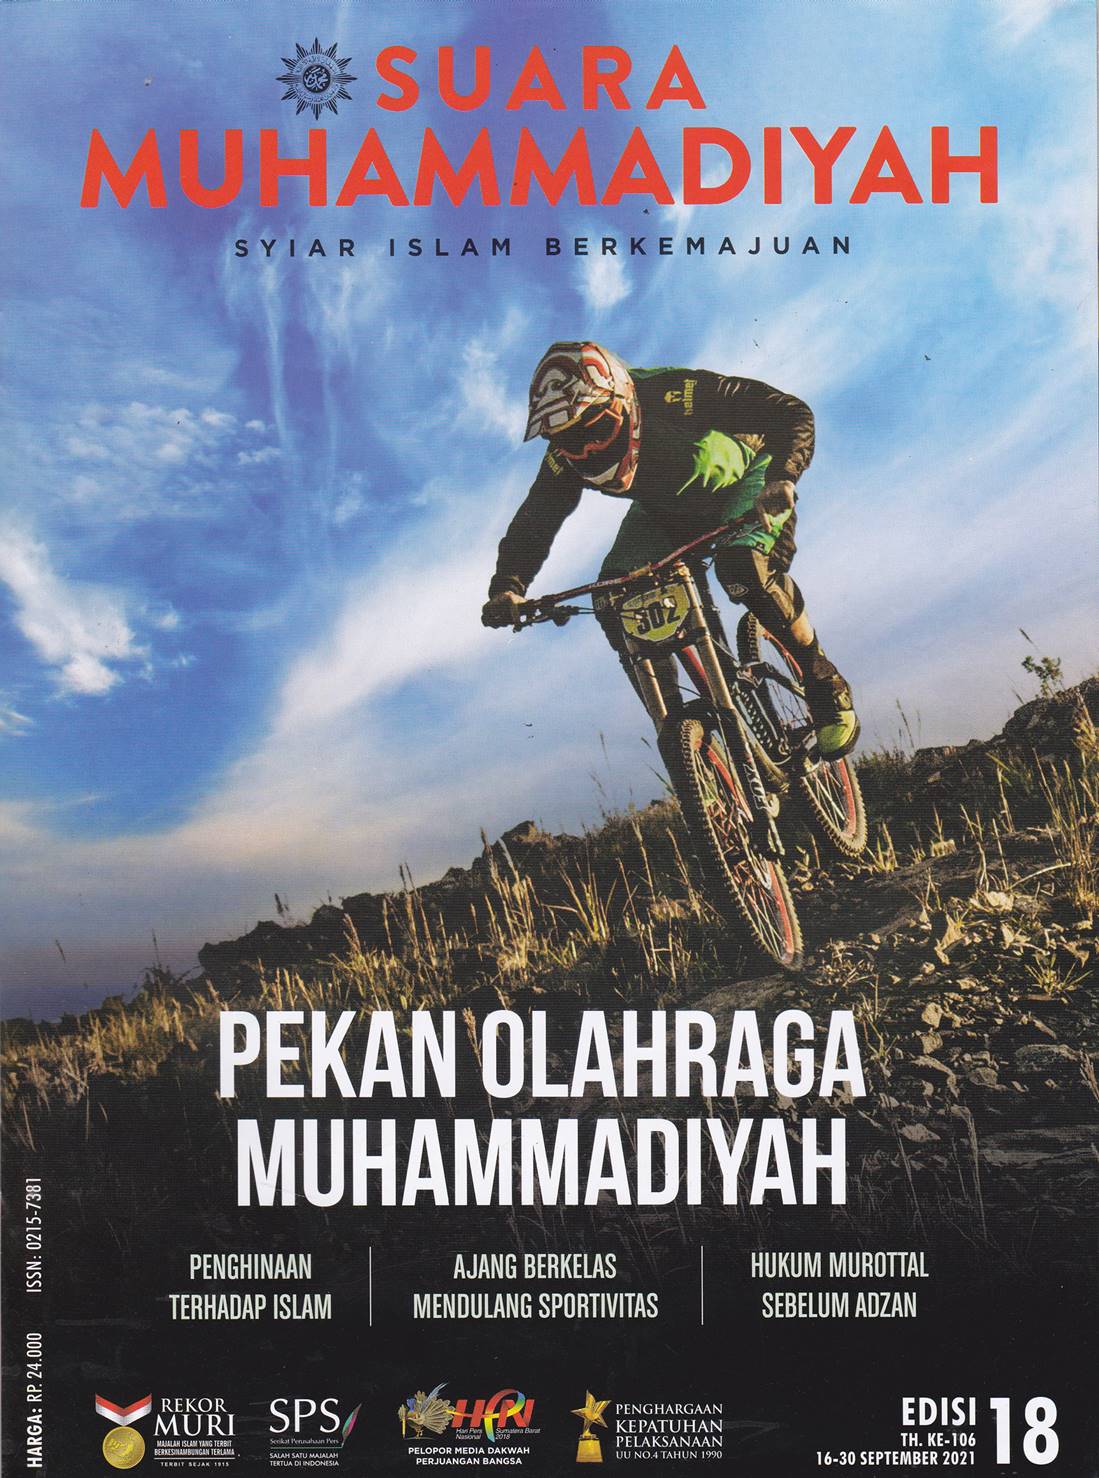 SUARA MUHAMMADIYAH: Syiar Islam Berkemajuan= Pekan Olahraga Muhammadiyah